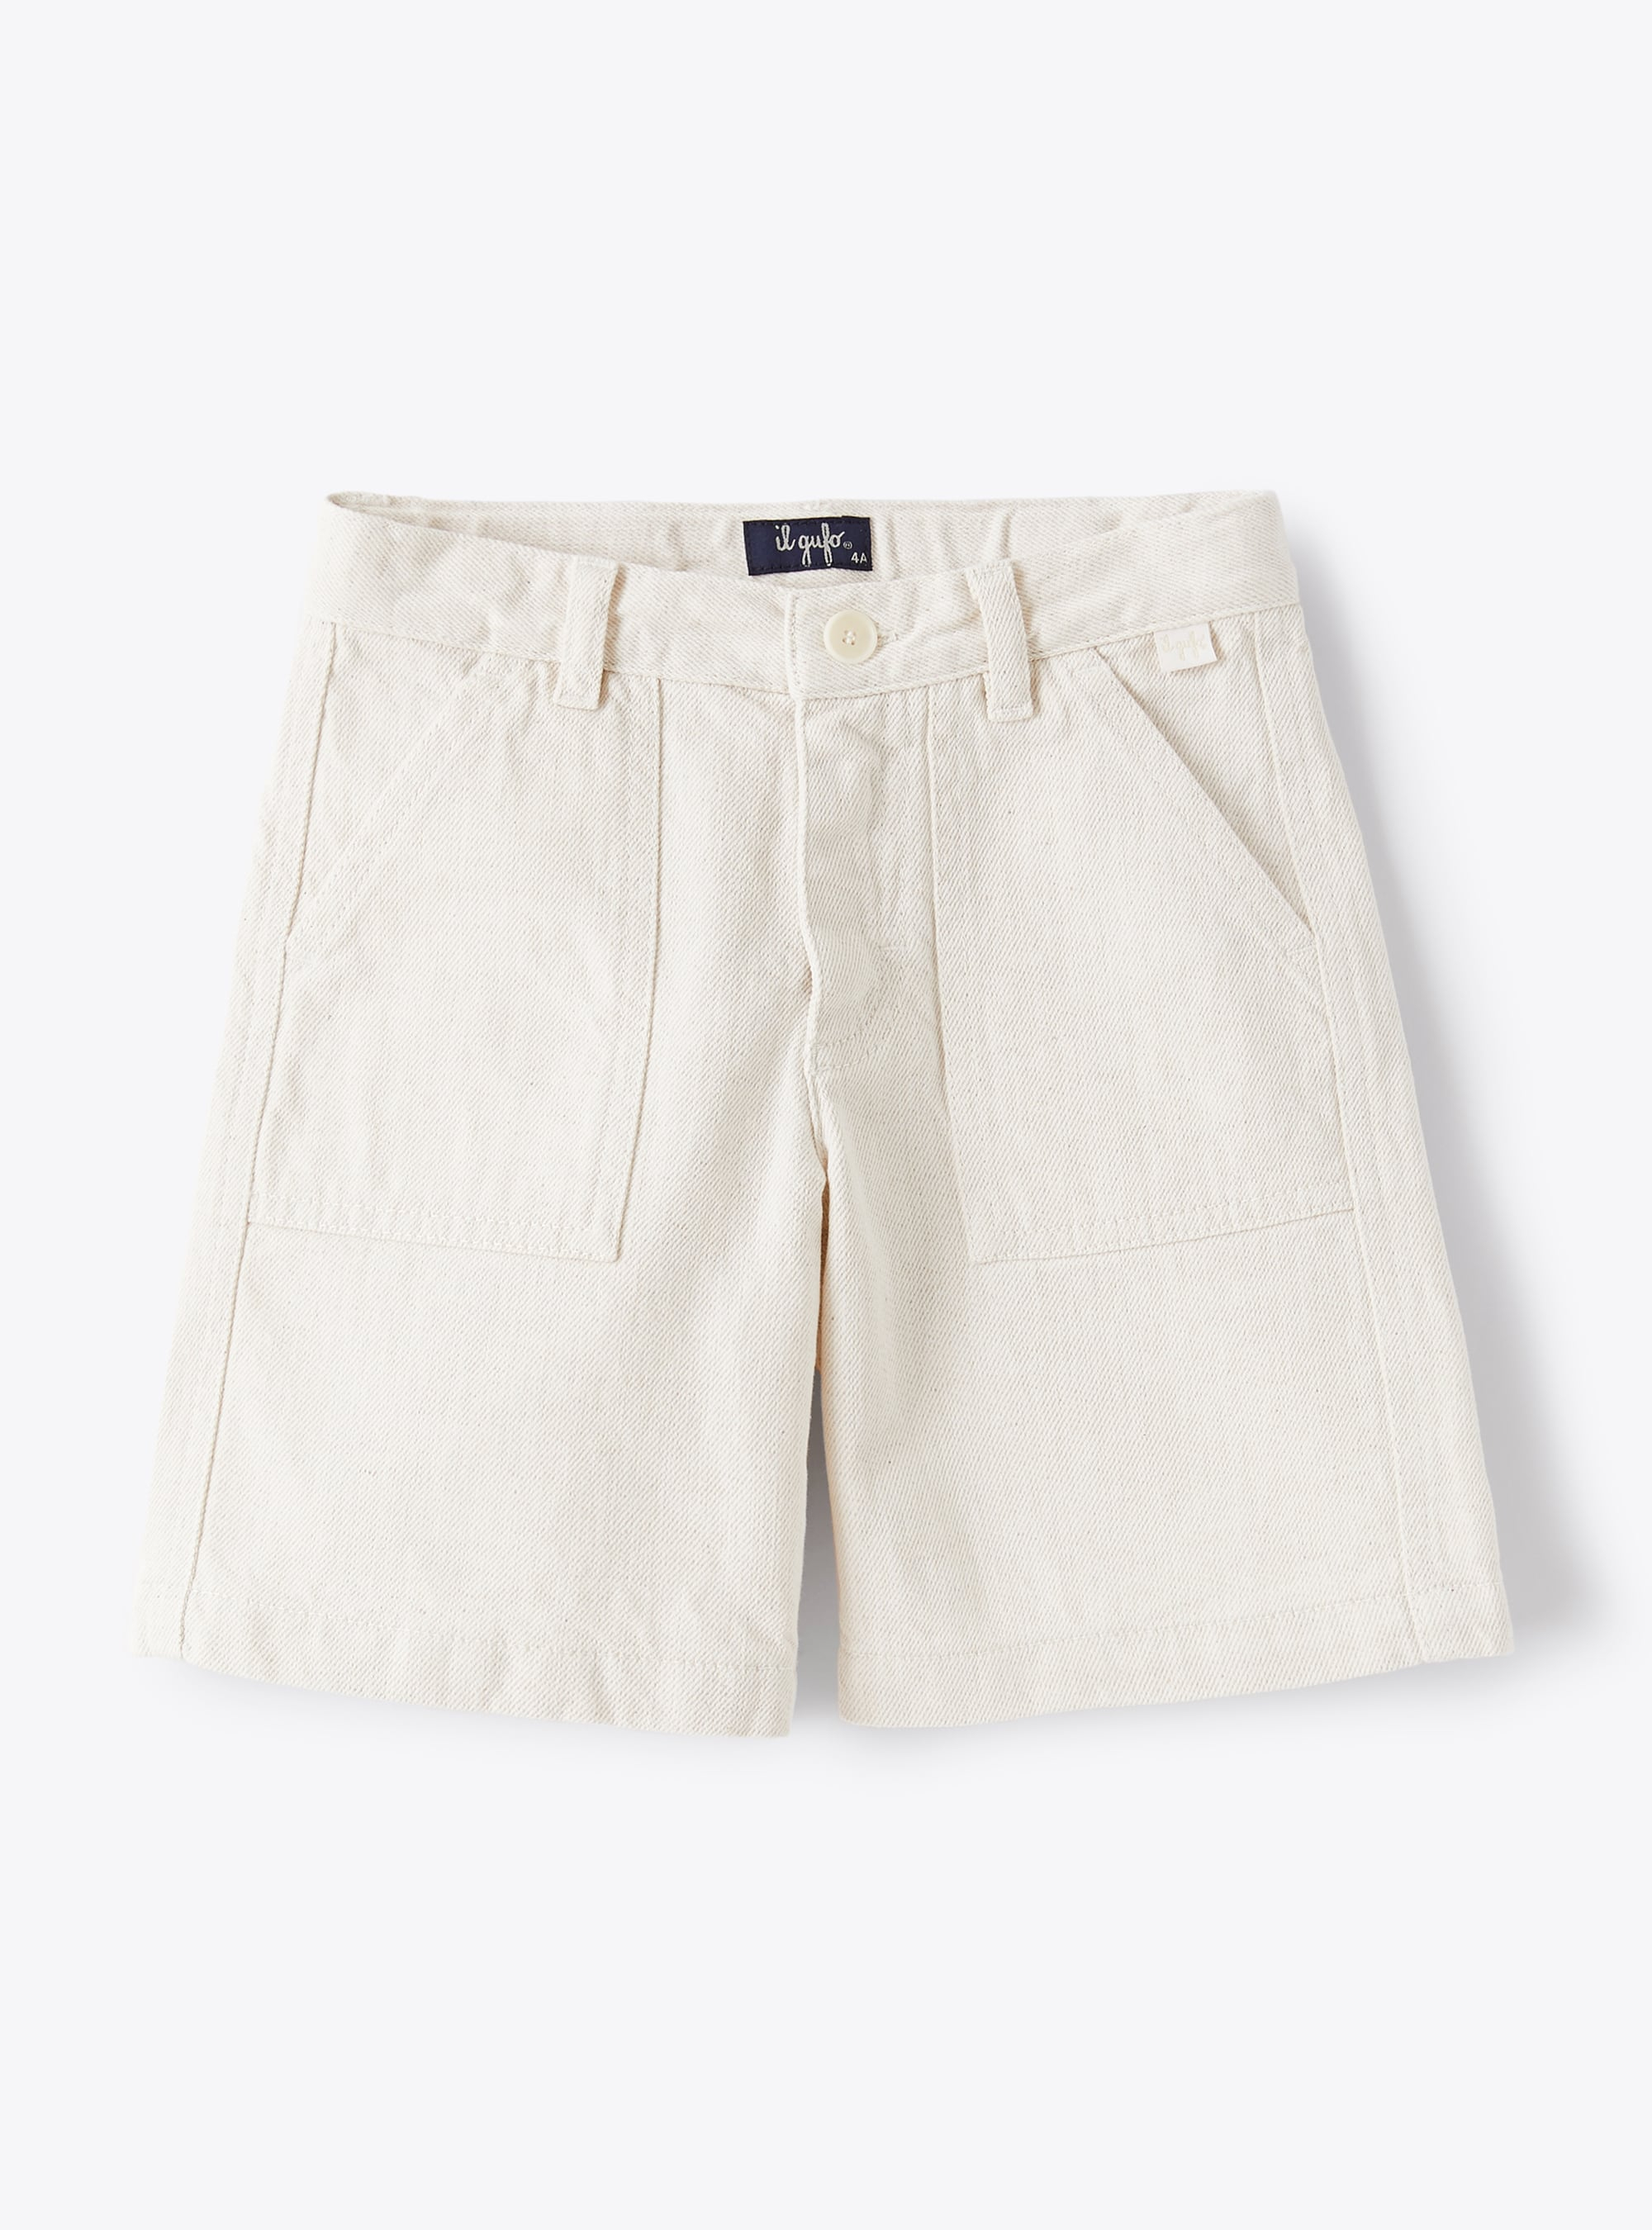 Bermuda shorts in cotton-and-linen bull denim - Beige | Il Gufo